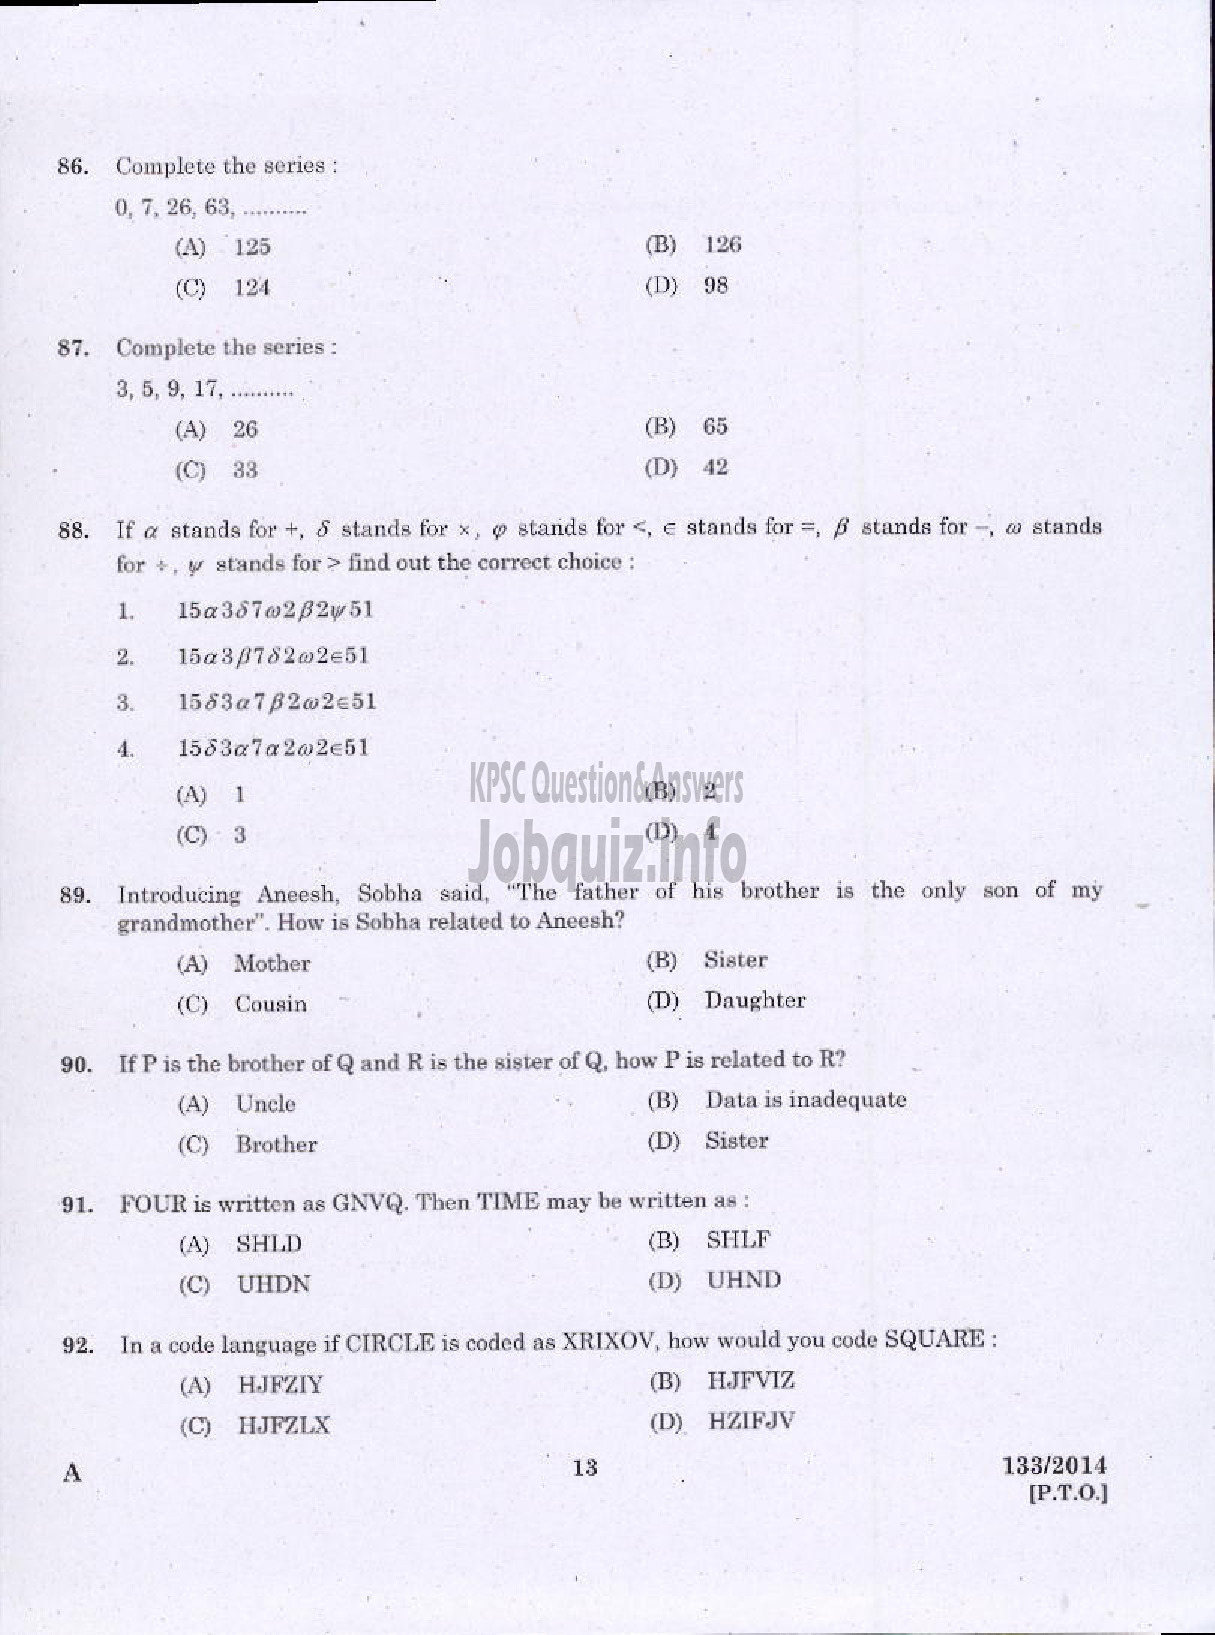 Kerala PSC Question Paper - EXCISE GUARD/WOMEN EXCISE GUARDS SR FROM ST EXCISE WYND/WOMEN CIVIL EXCISE OFFICER/CIVIL EXCISE OFFICER EXCISE-11